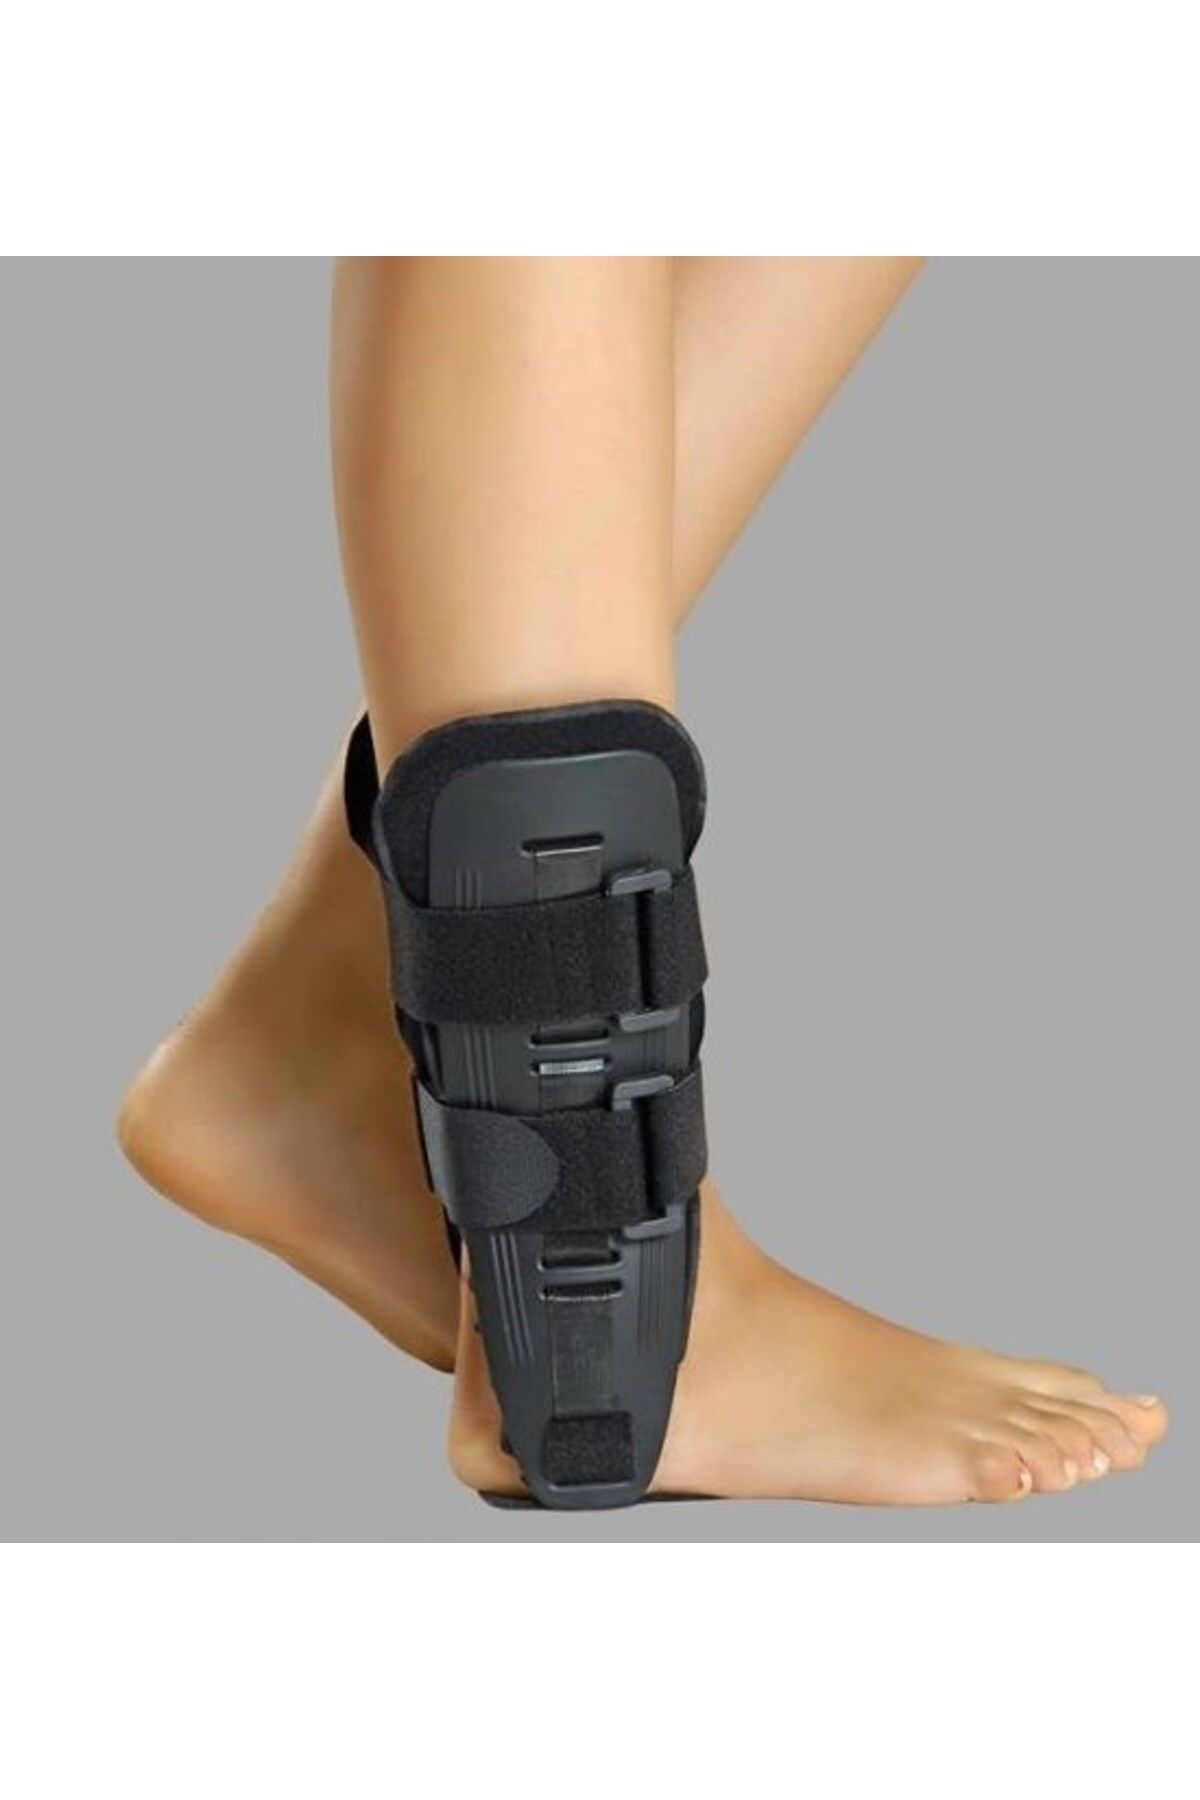 başarı ortopedi Ayak Bilek Bağ Kopması Burkulma Ortopedik Kumaşlı Ayak Bileği Stabilizasyon Ateli Ped Destekli